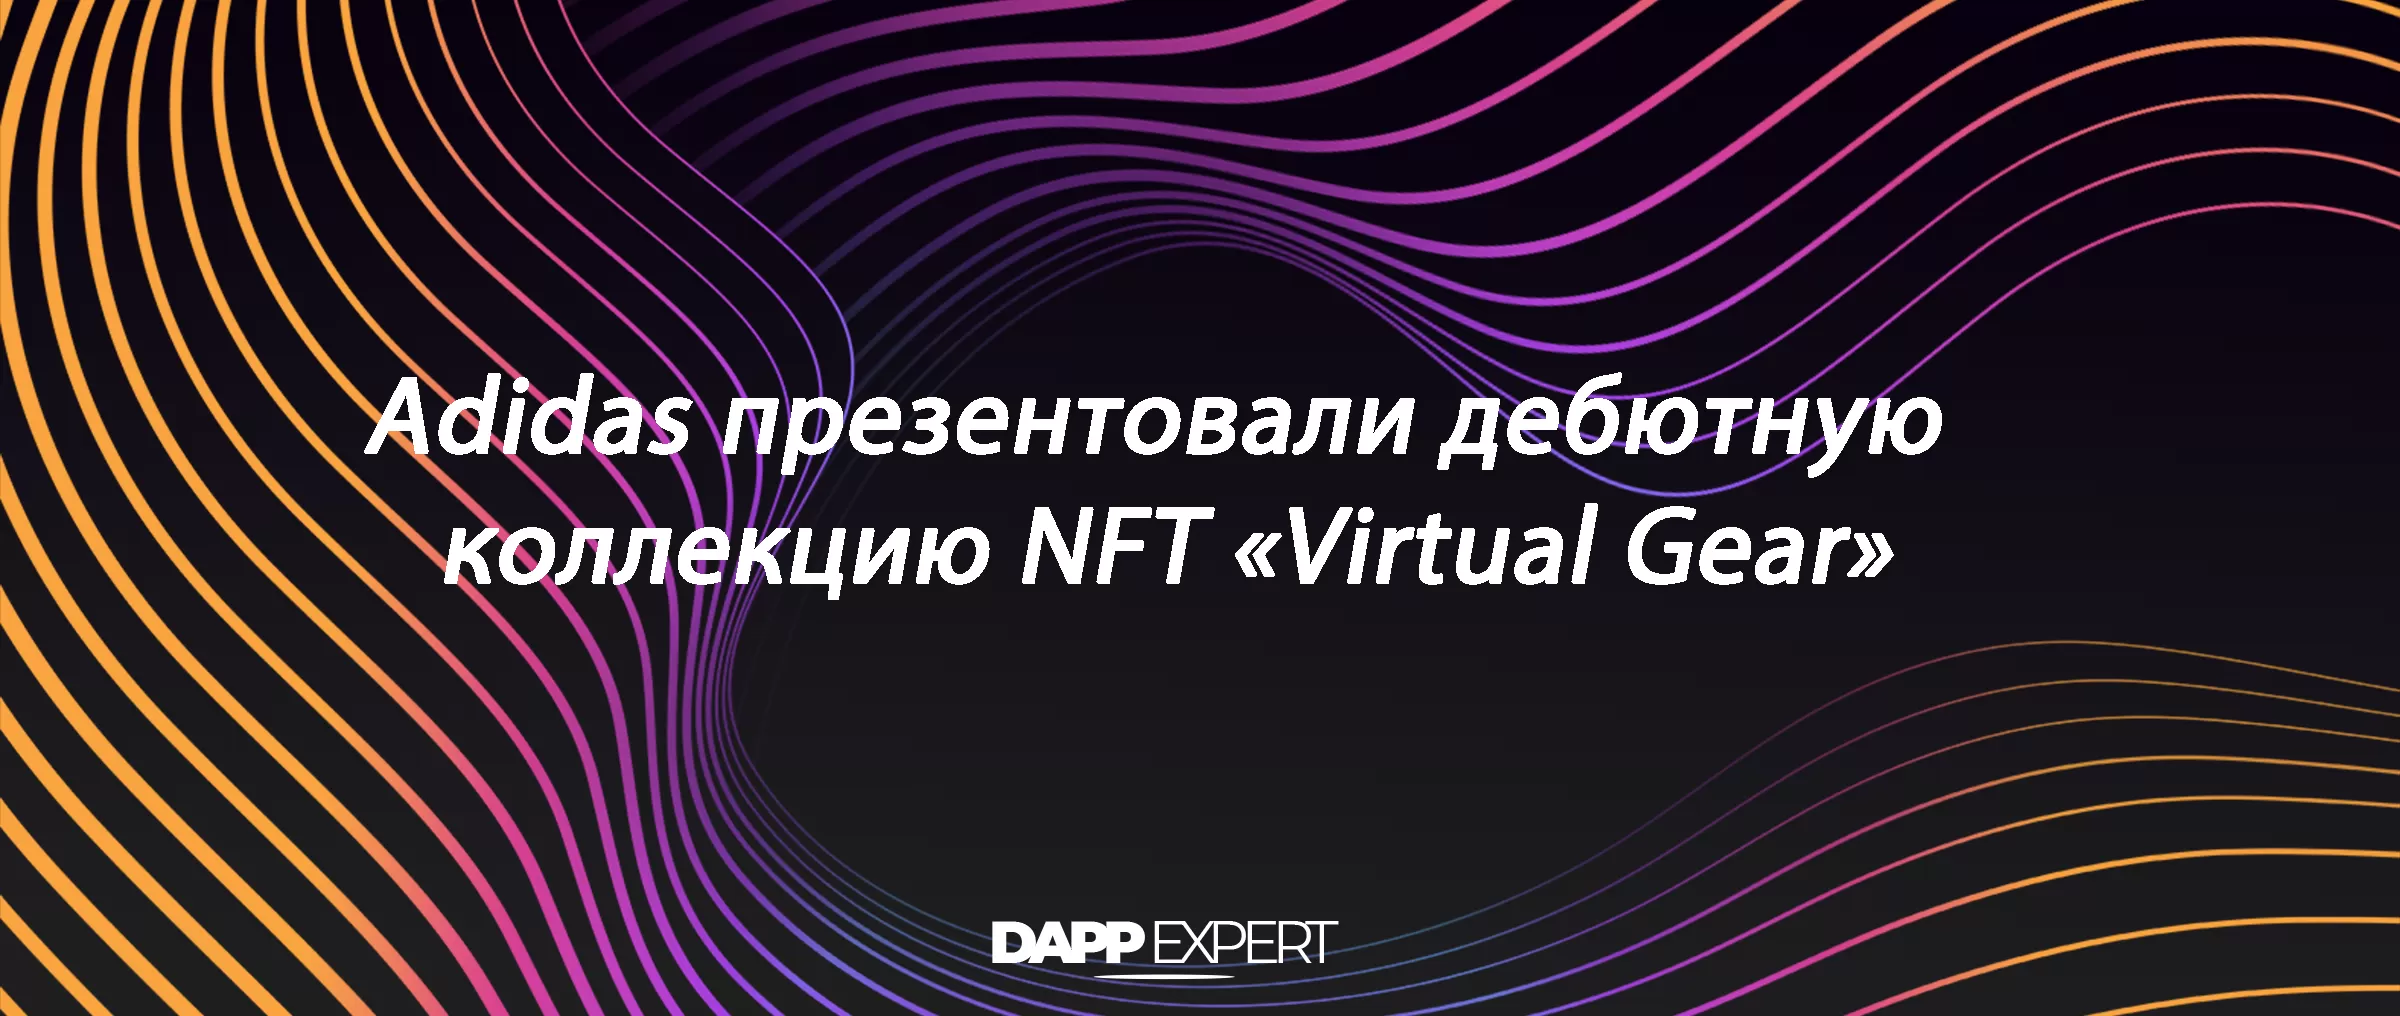 Adidas презентовали дебютную коллекцию NFT «Virtual Gear»